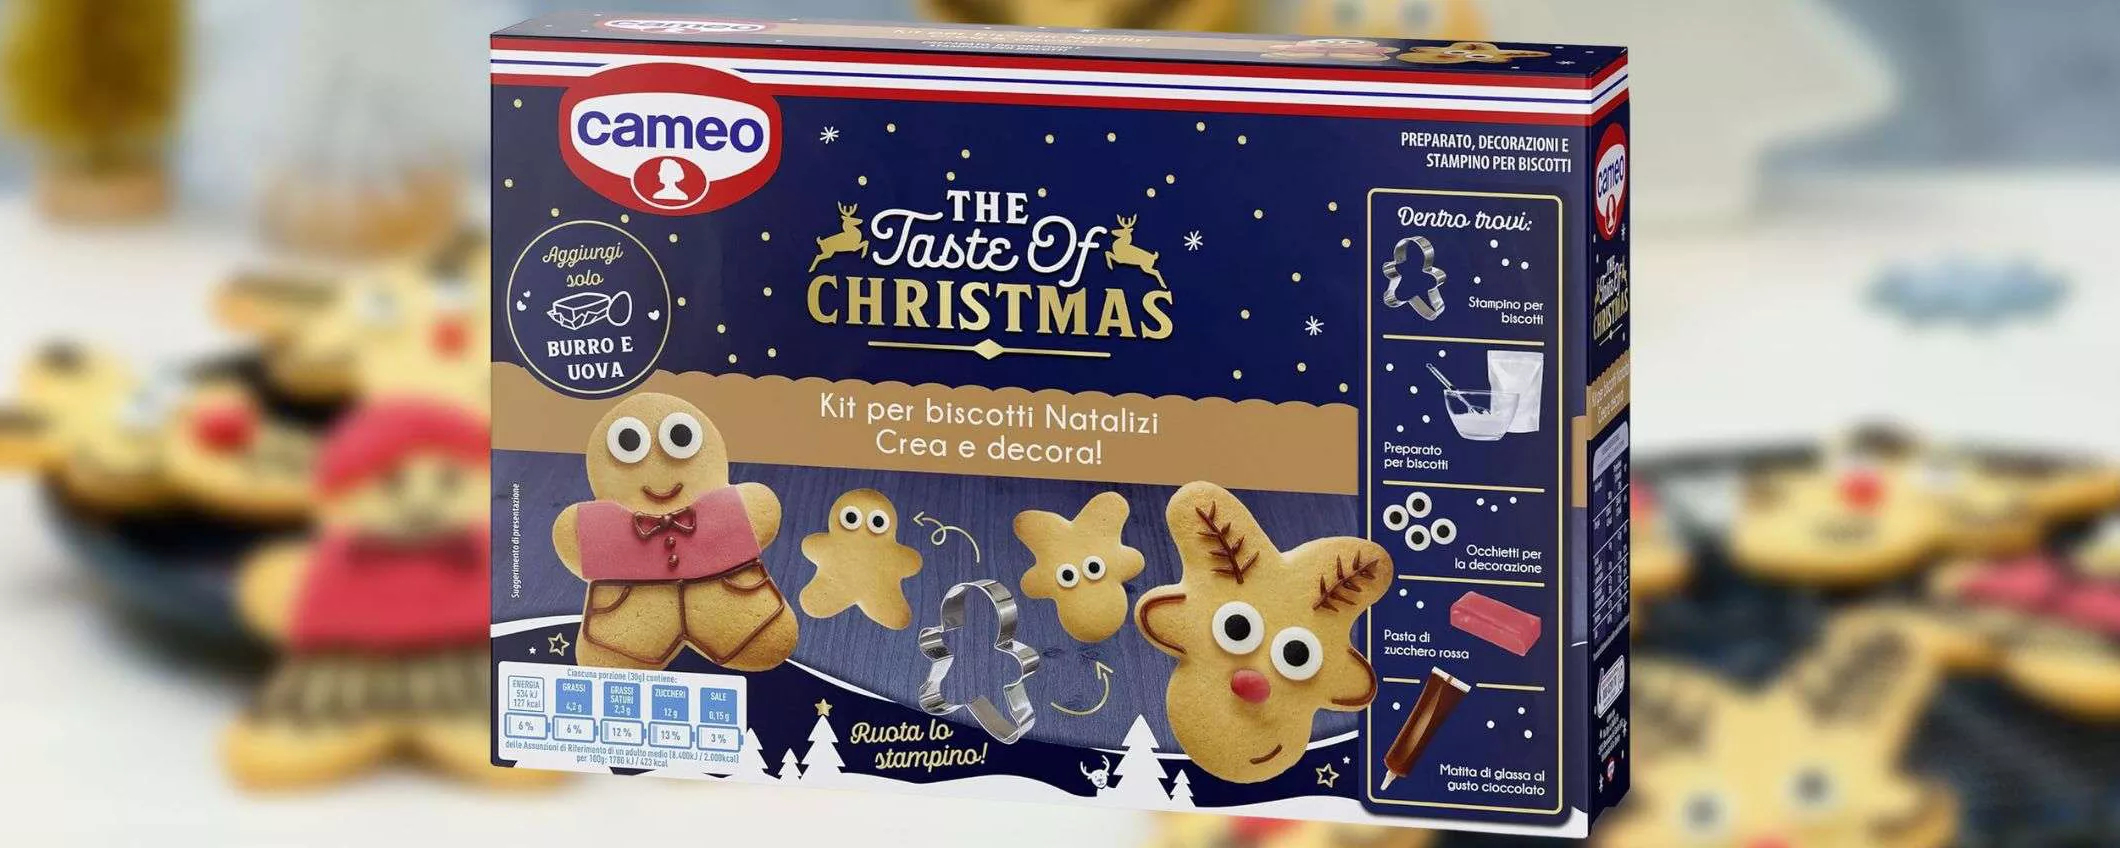 Cameo: solo 5,99€ per il kit dei biscotti di Natale, SPETTACOLARE (Amazon)